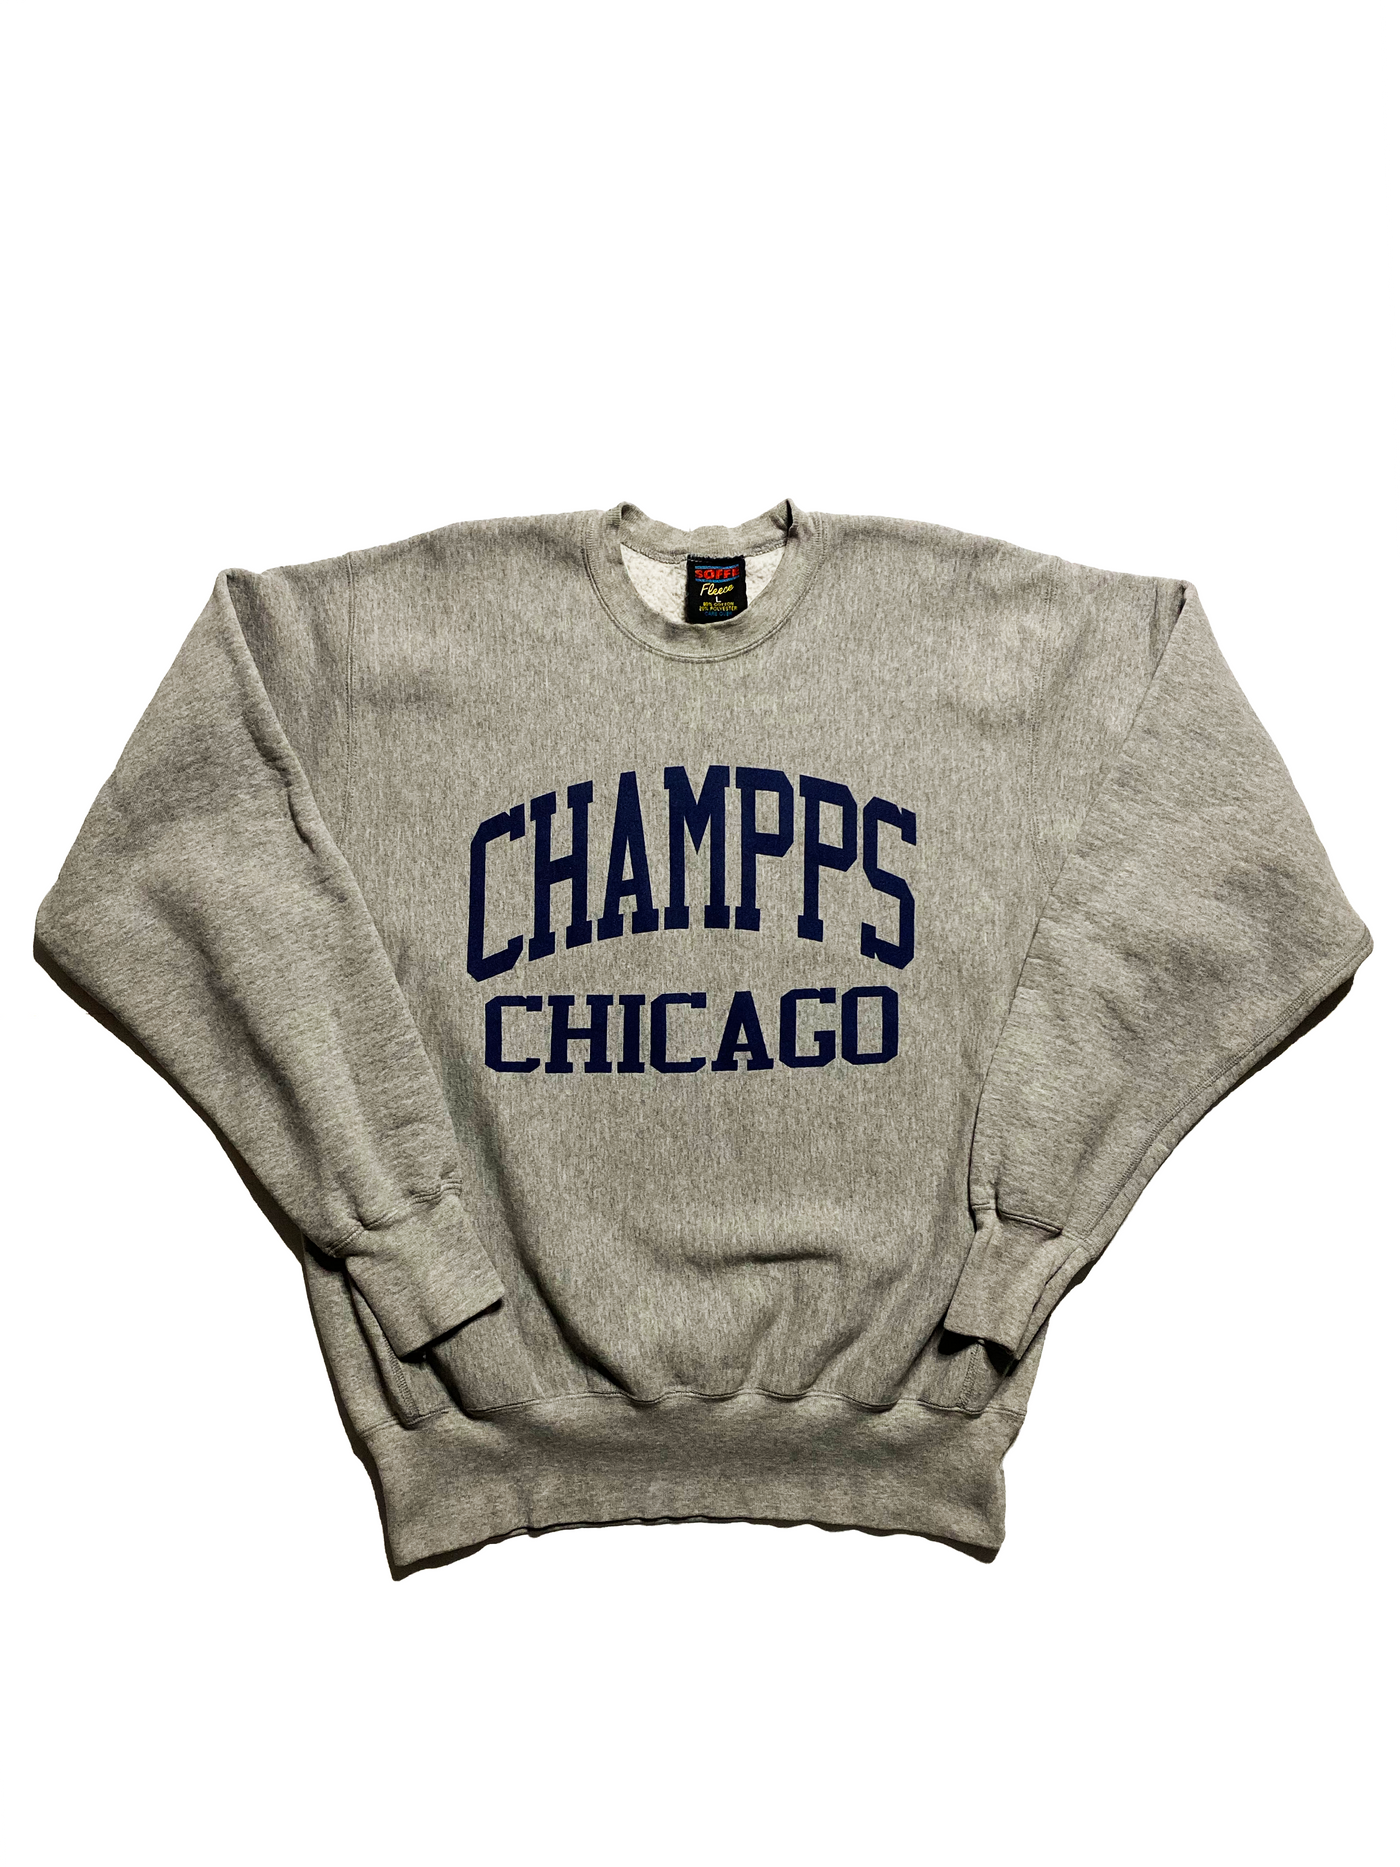 Vintage 90s Champs Chicago Crewneck